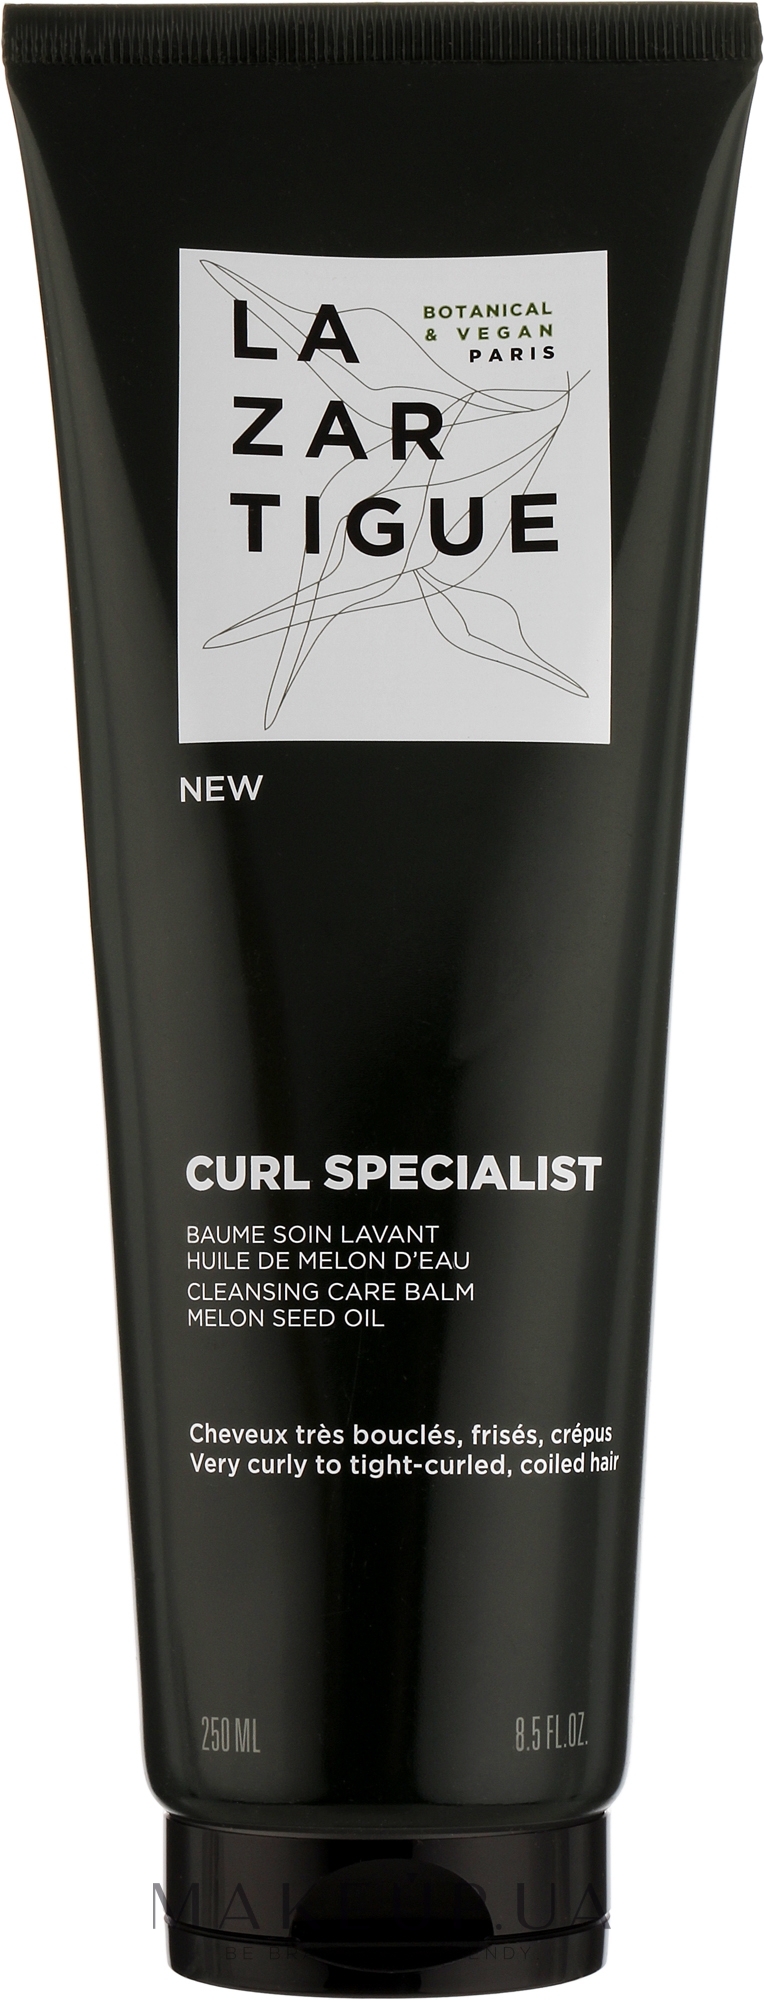 Очищувальний бальзам для волосся - Lazartigue Curl Specialist Cleansing Care Balm — фото 250ml